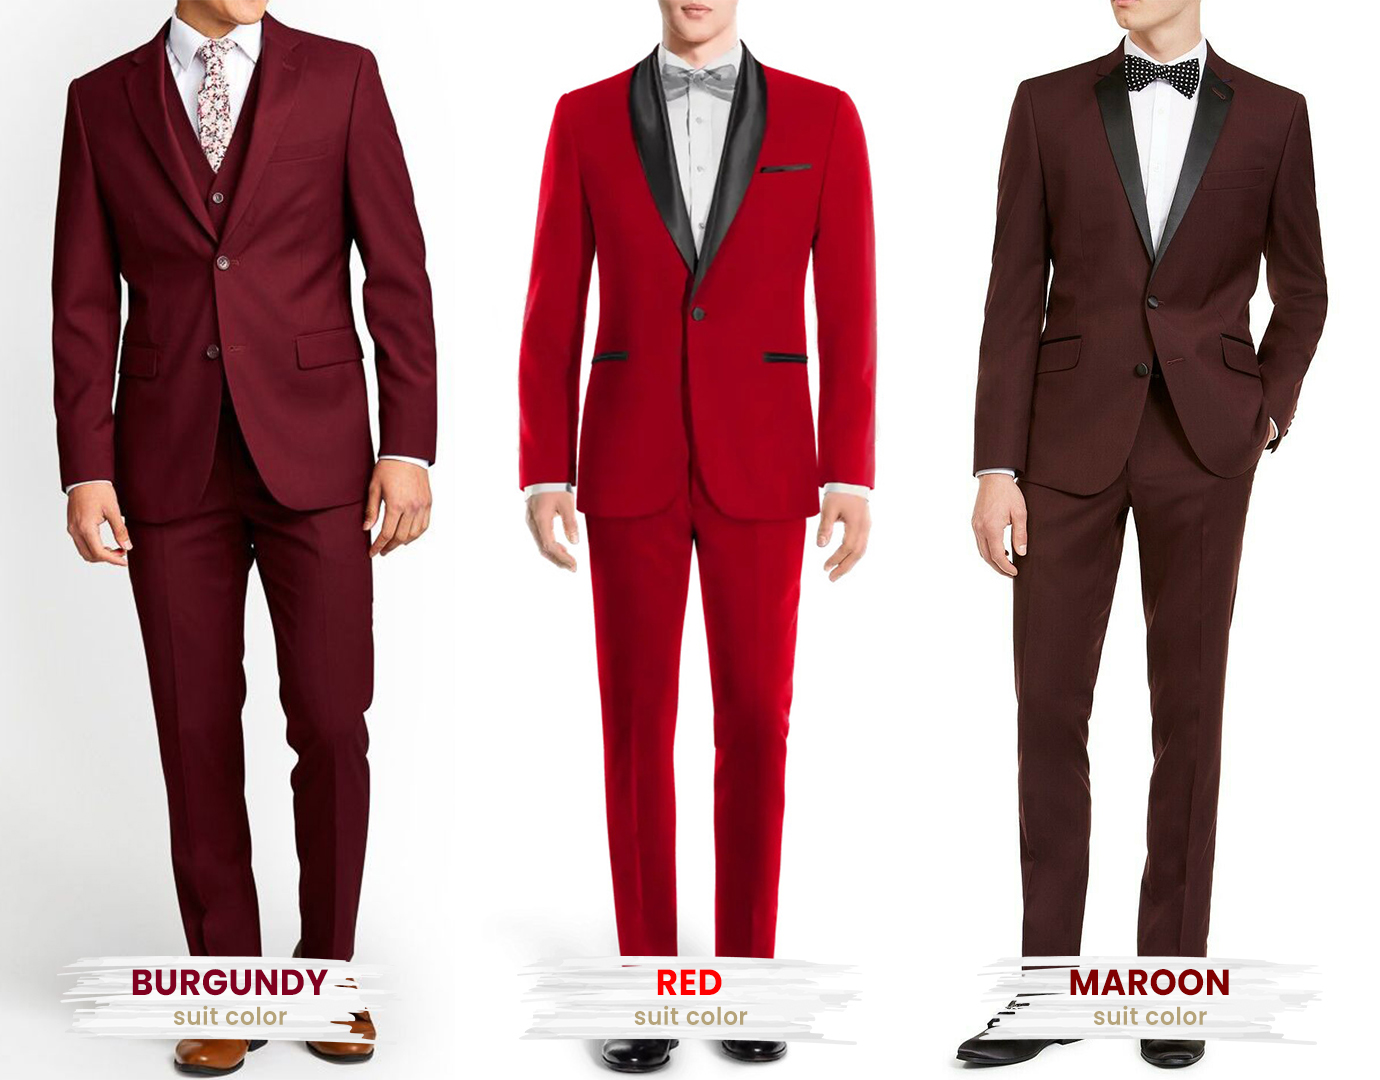 burgundy vs. red vs. maroon suit